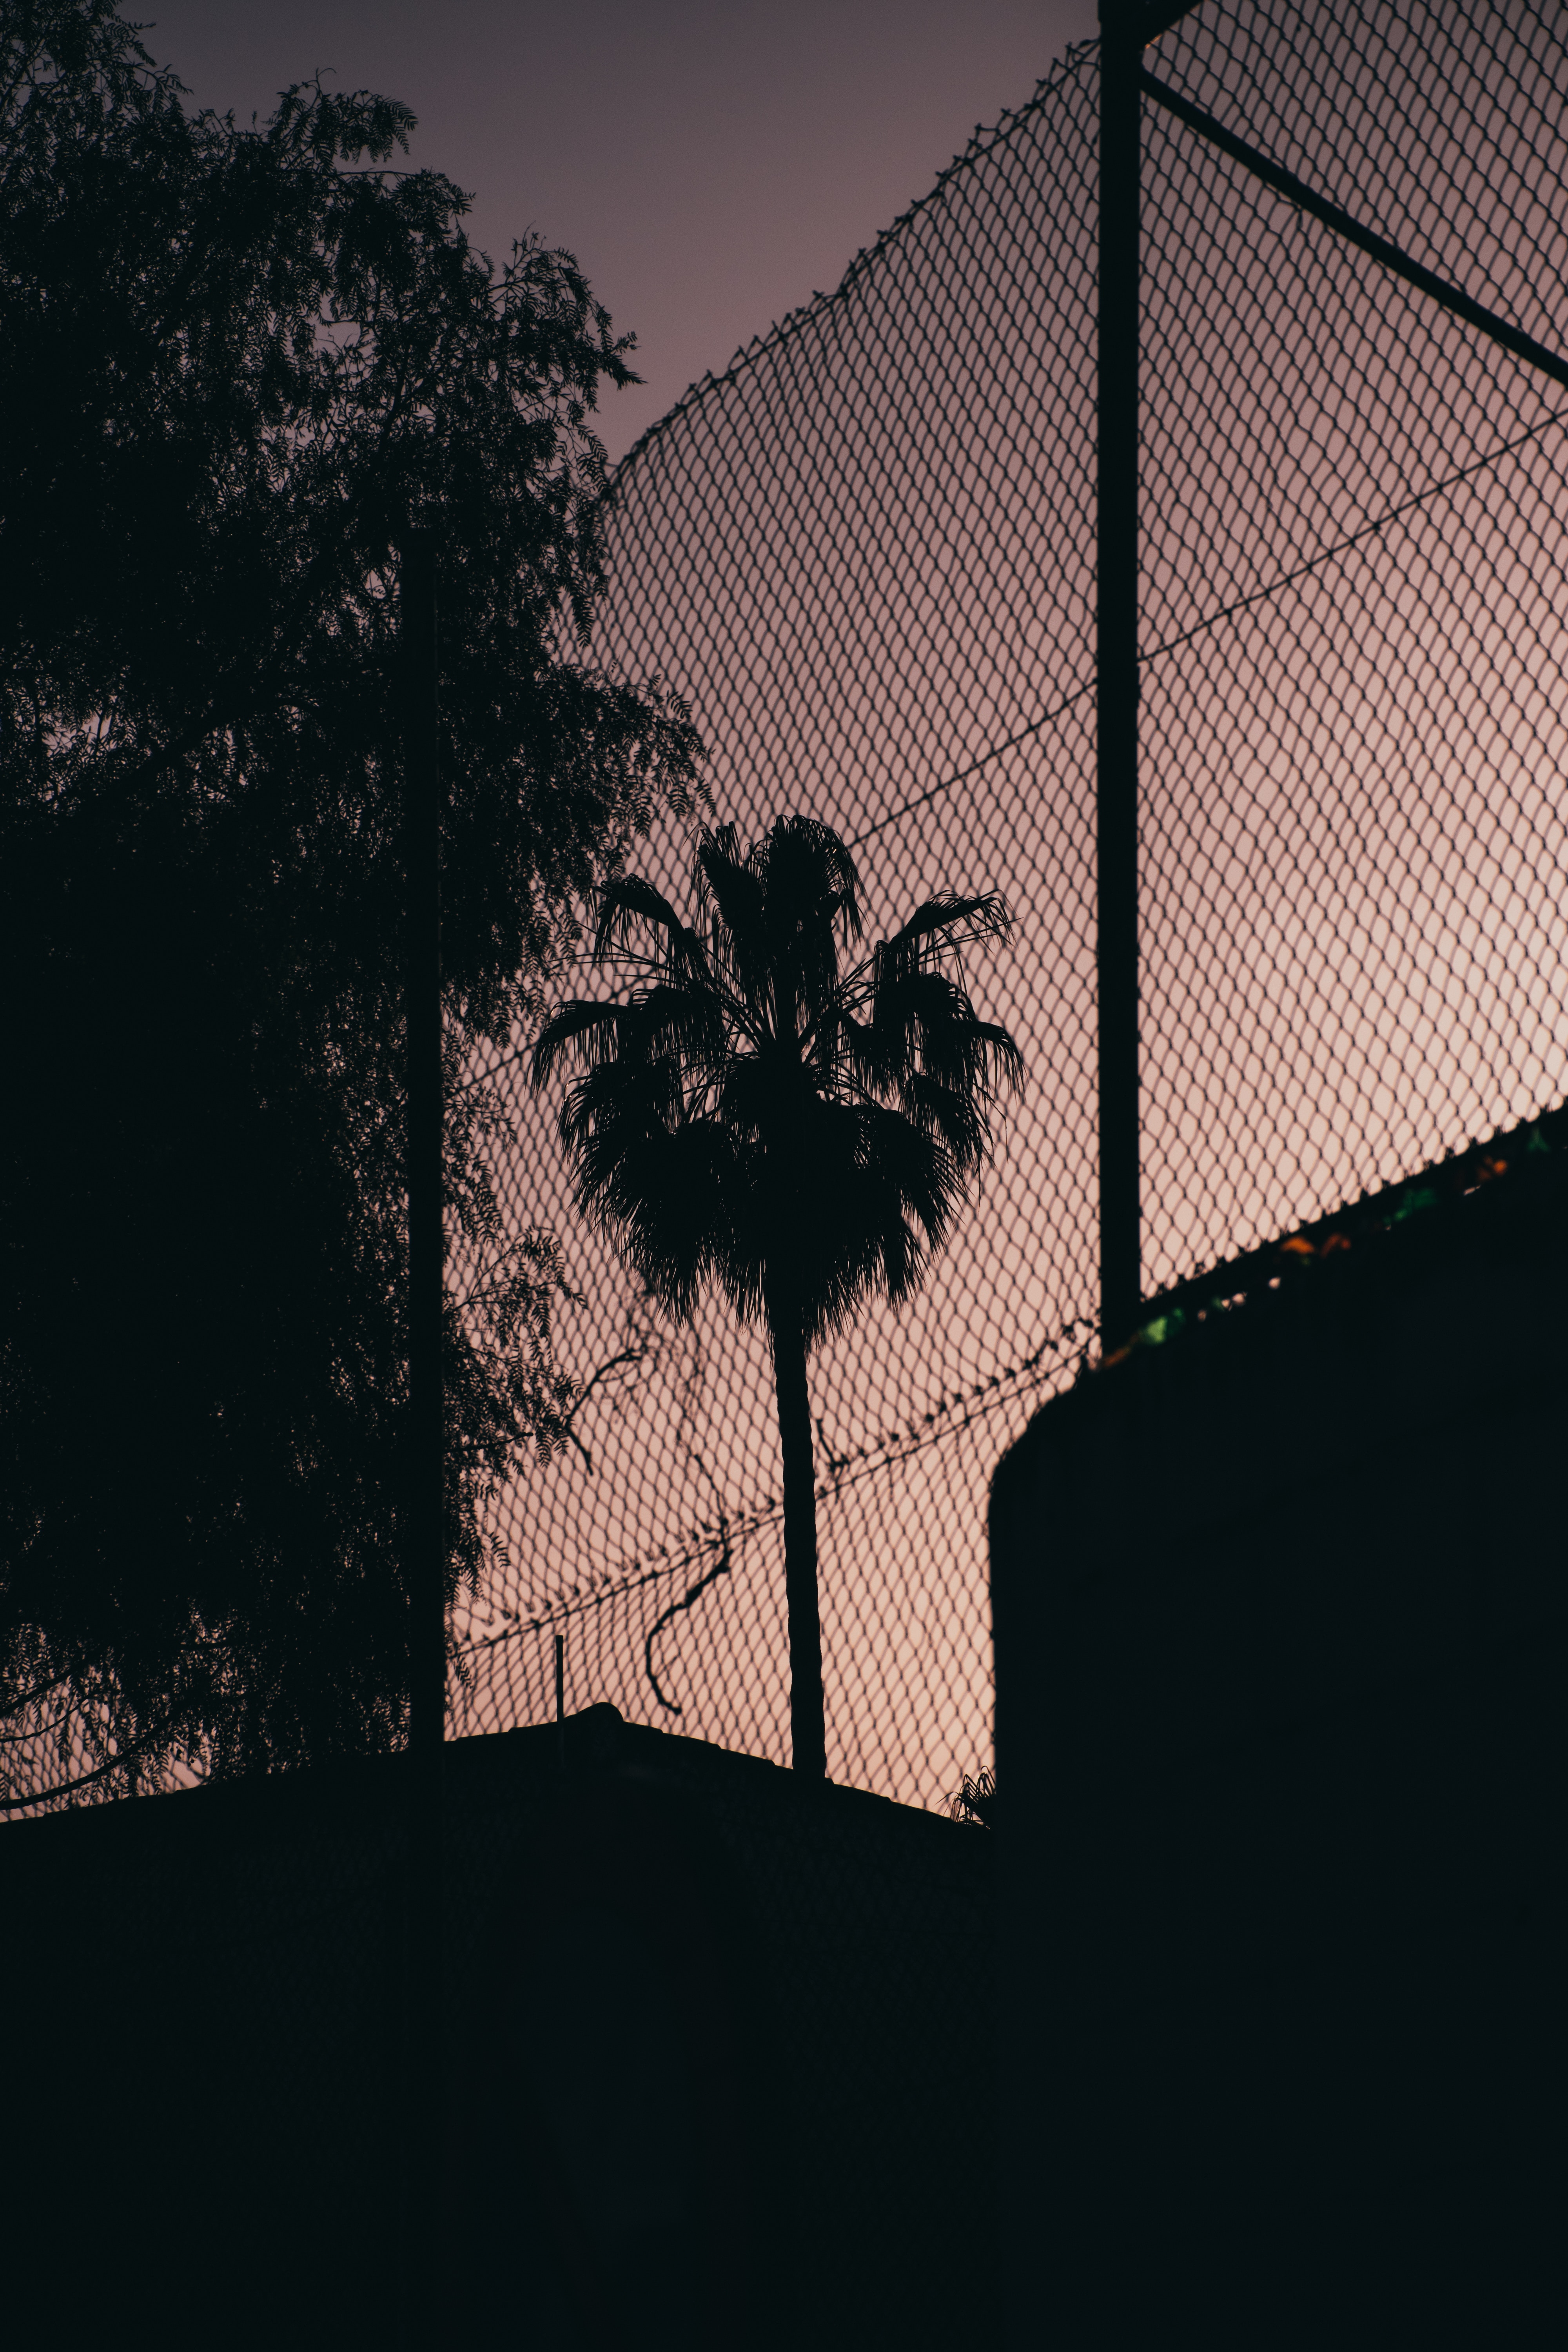 palm, dark, night, grid, fence, darkness cellphone